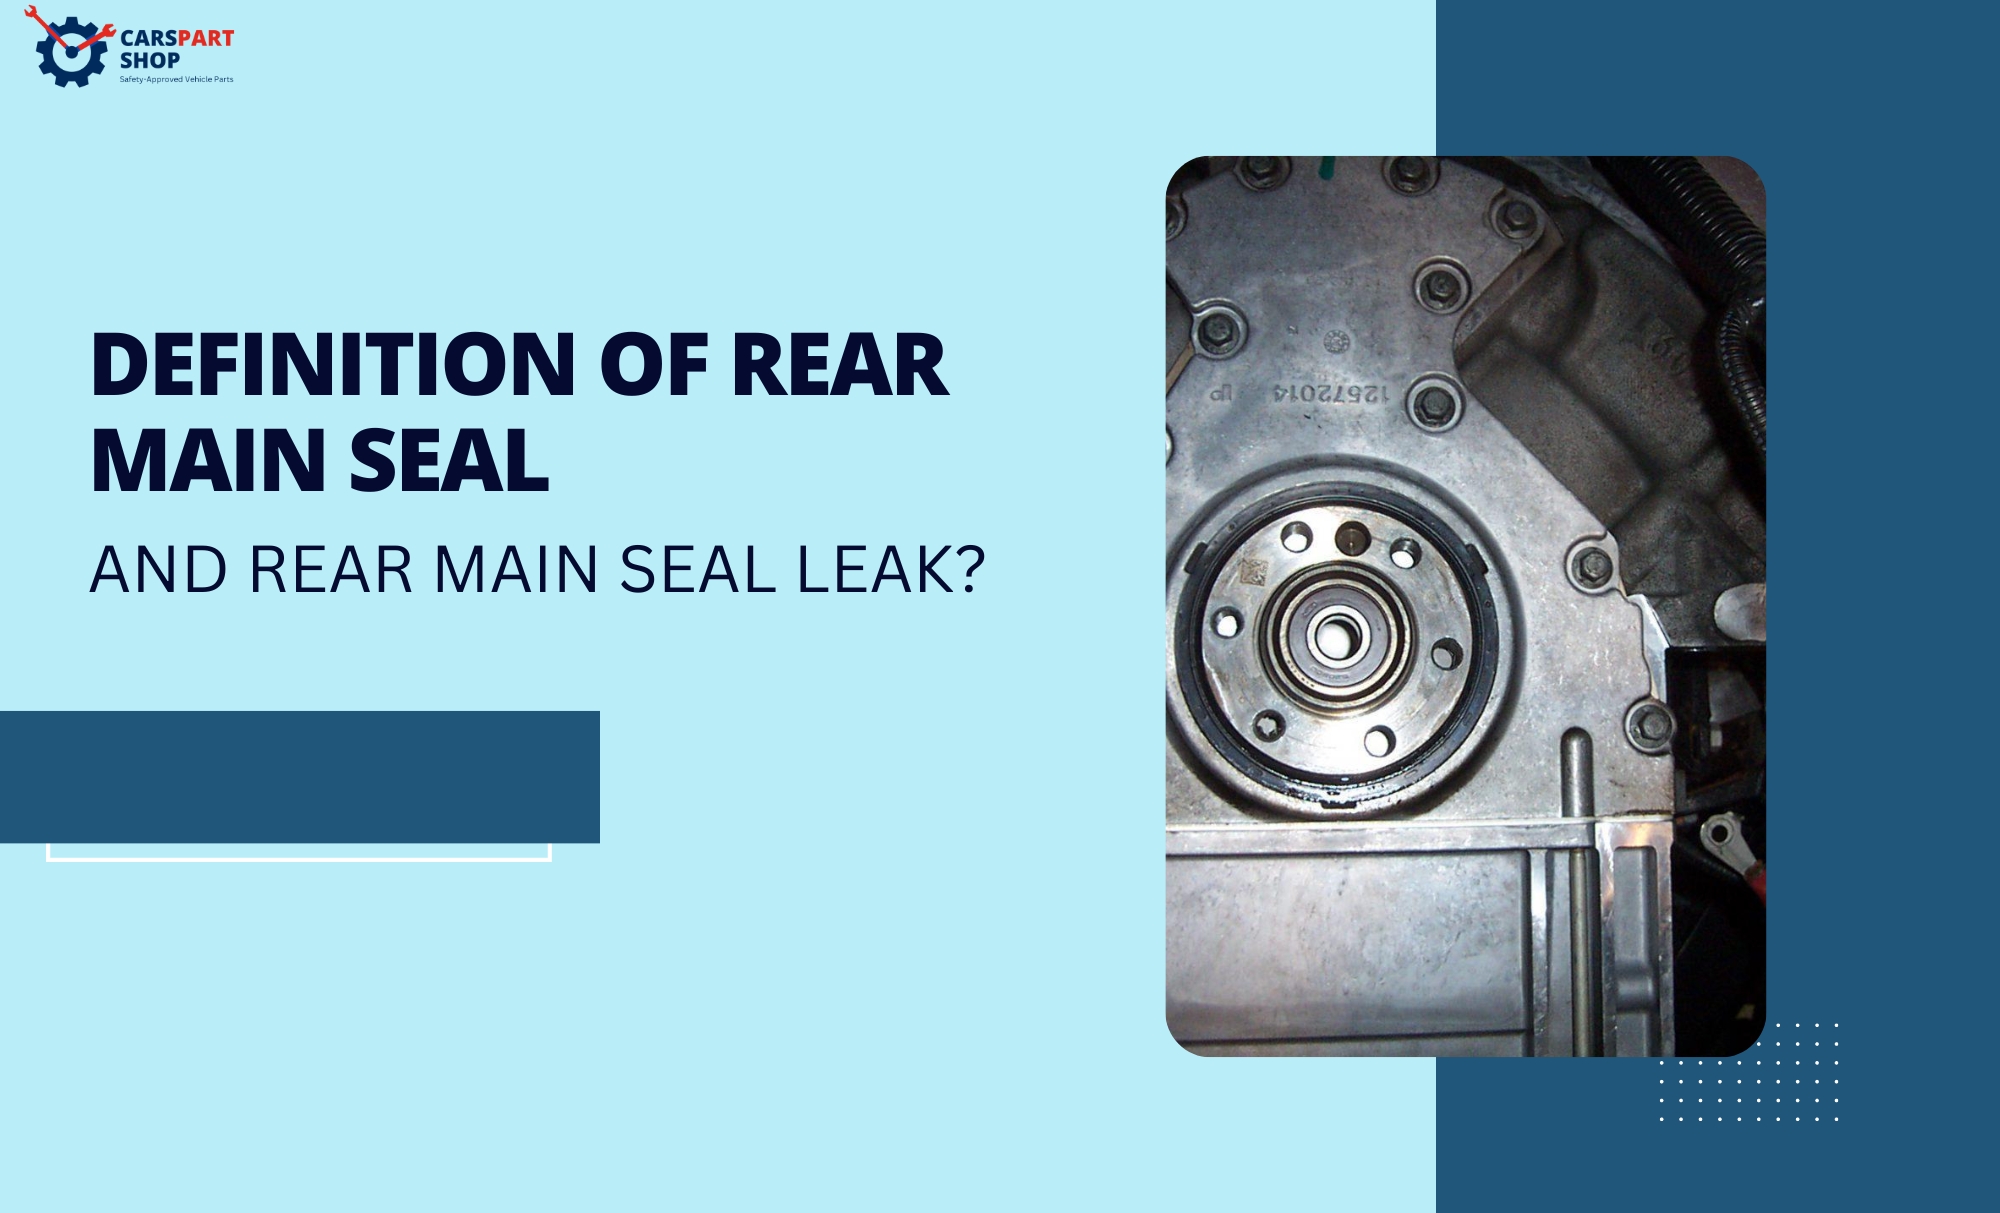 rear main seal leak meaning